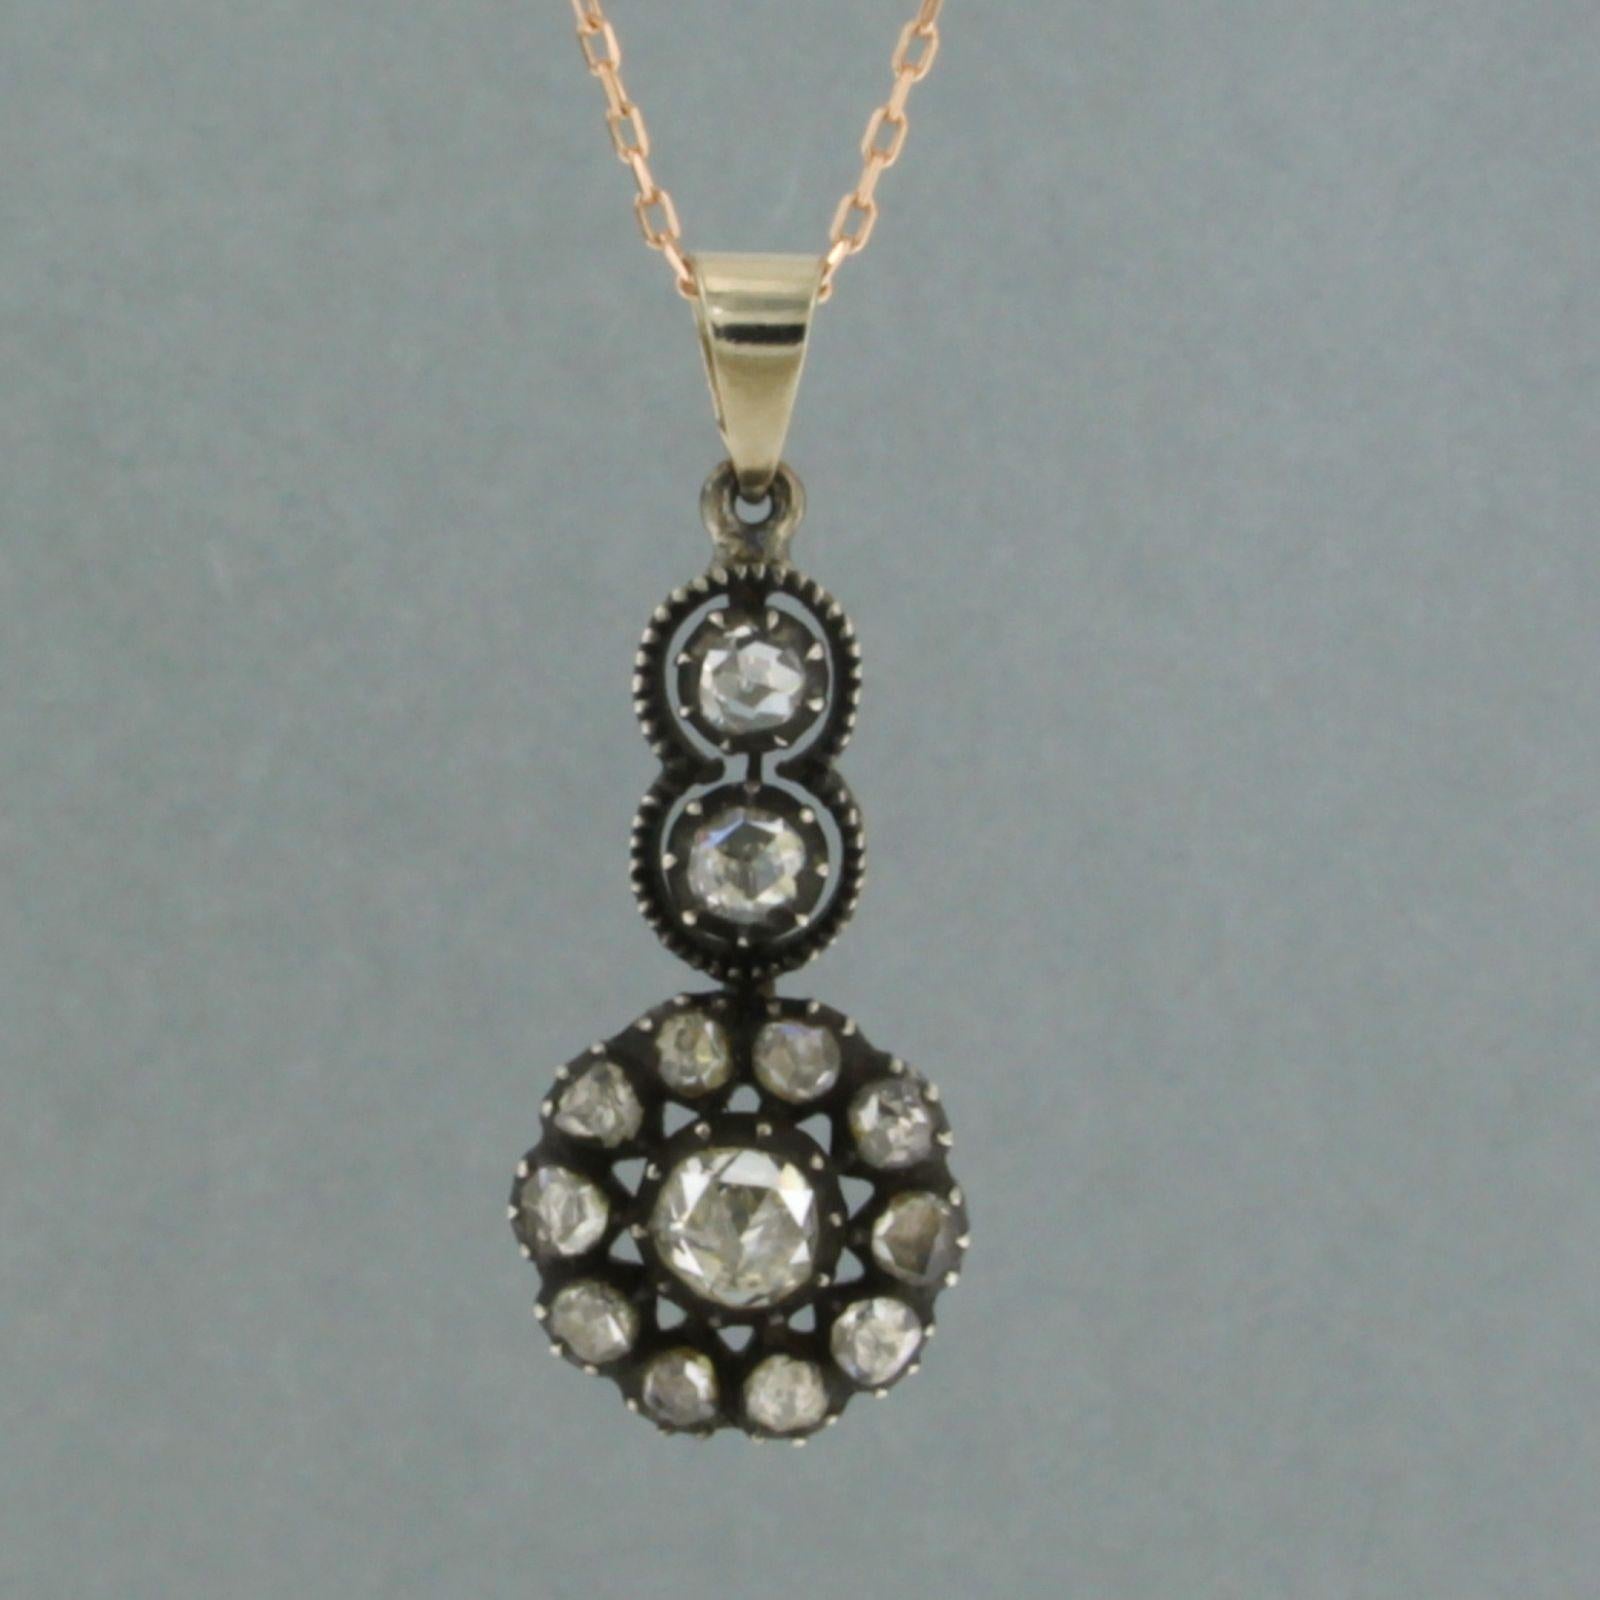 Collier en or rose 14k avec pendentif en or et argent serti de diamants roses. 0,50ct - G/H - SI - 45 cm 45 cm de long

description détaillée :

la longueur du collier est de 45 cm pour 0,7 mm de large, le collier est neuf

la taille du pendentif